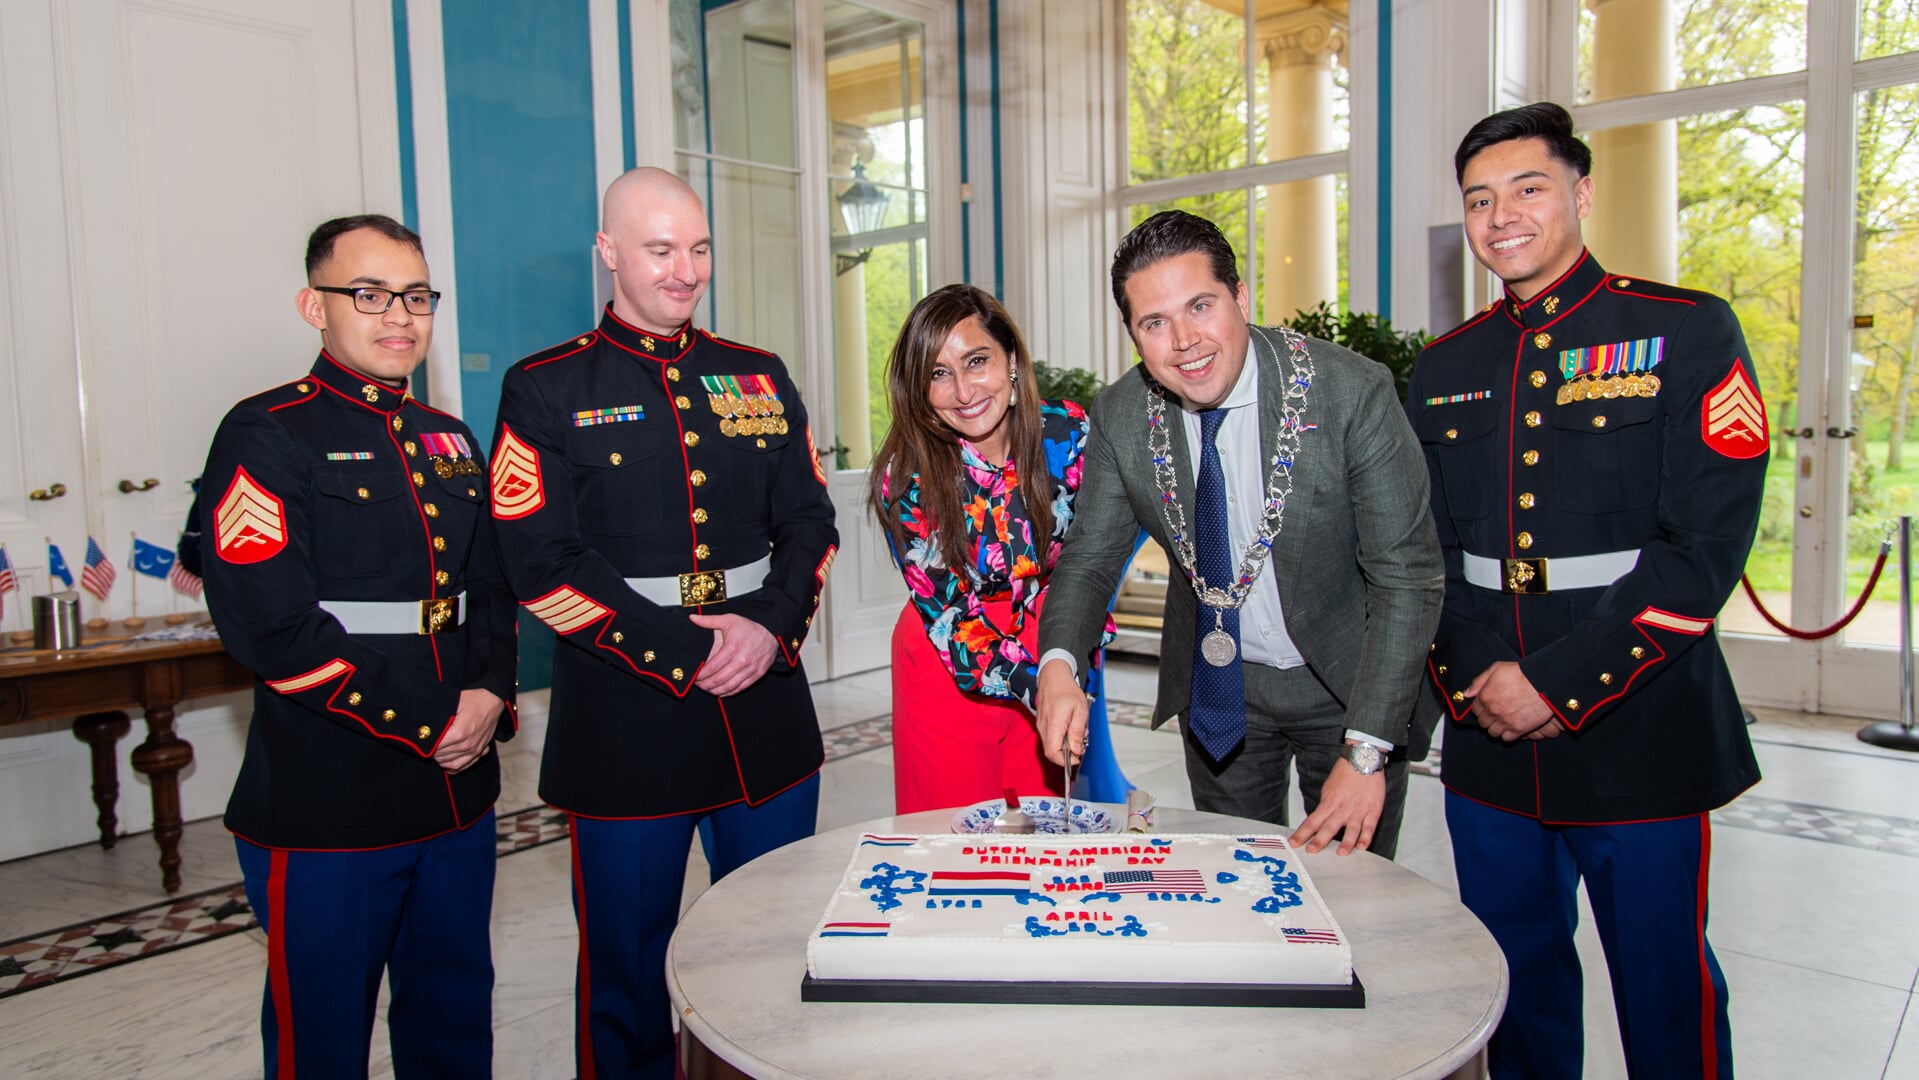 Locoburgemeester Laurens van Doeveren ontving vrijdag 19 april VS-ambassadrice Shefali Razdan Duggal om 242 jaar ononderbroken vriendschap te vieren tussen Nederland en de Verenigde Staten. Op de foto snijden zij samen de taart aan onder toeziend oog van Amerikaanse mariniers. Foto: Patrick Kop.